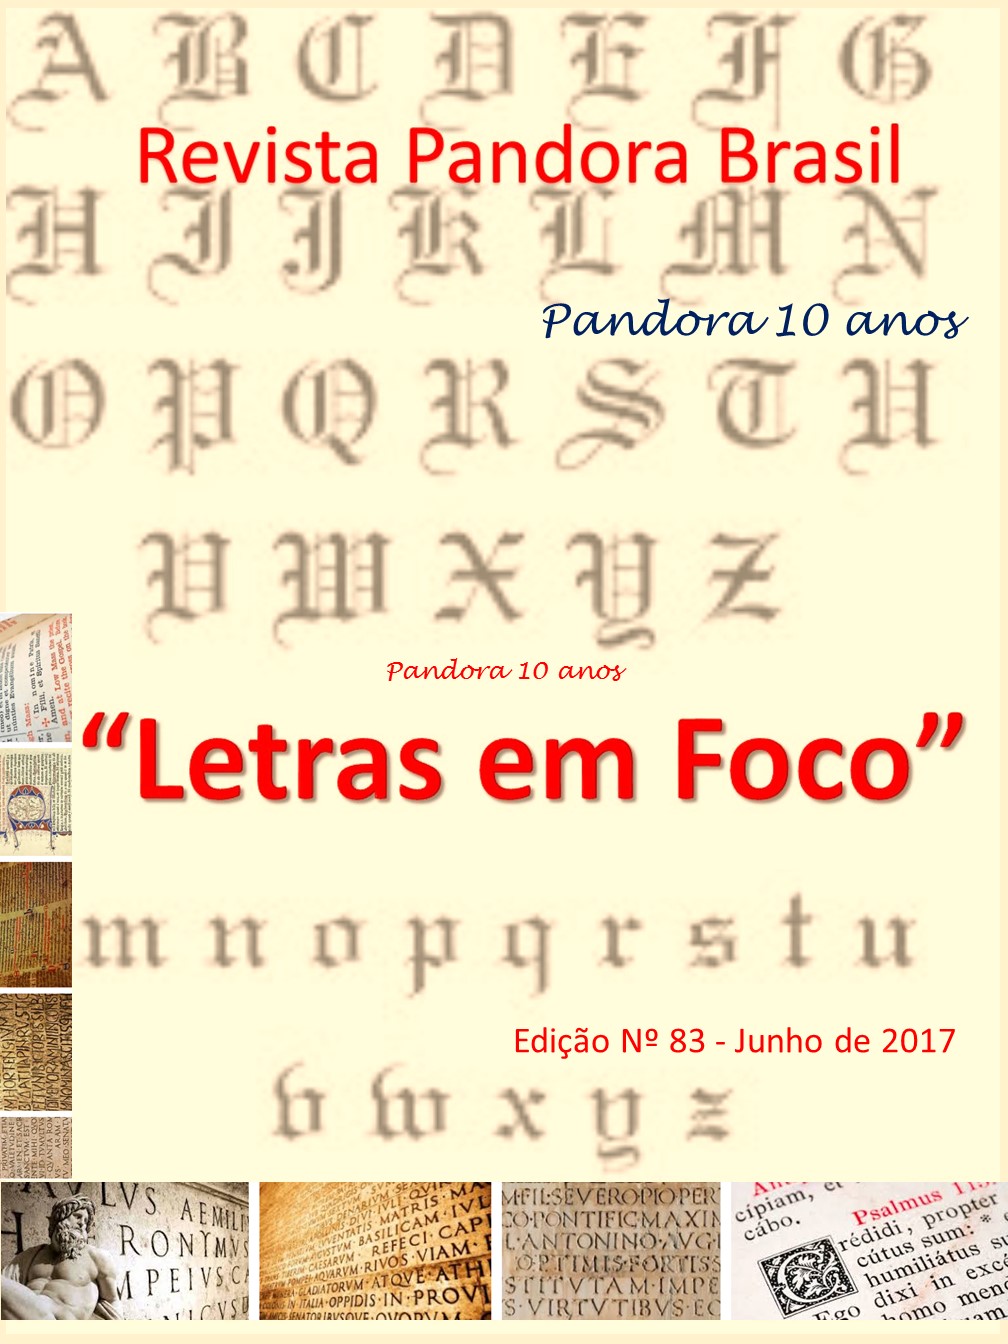 RevistaDeLetraEmLetra vol3 n1 2016 by Revista De Letra em Letra - Issuu